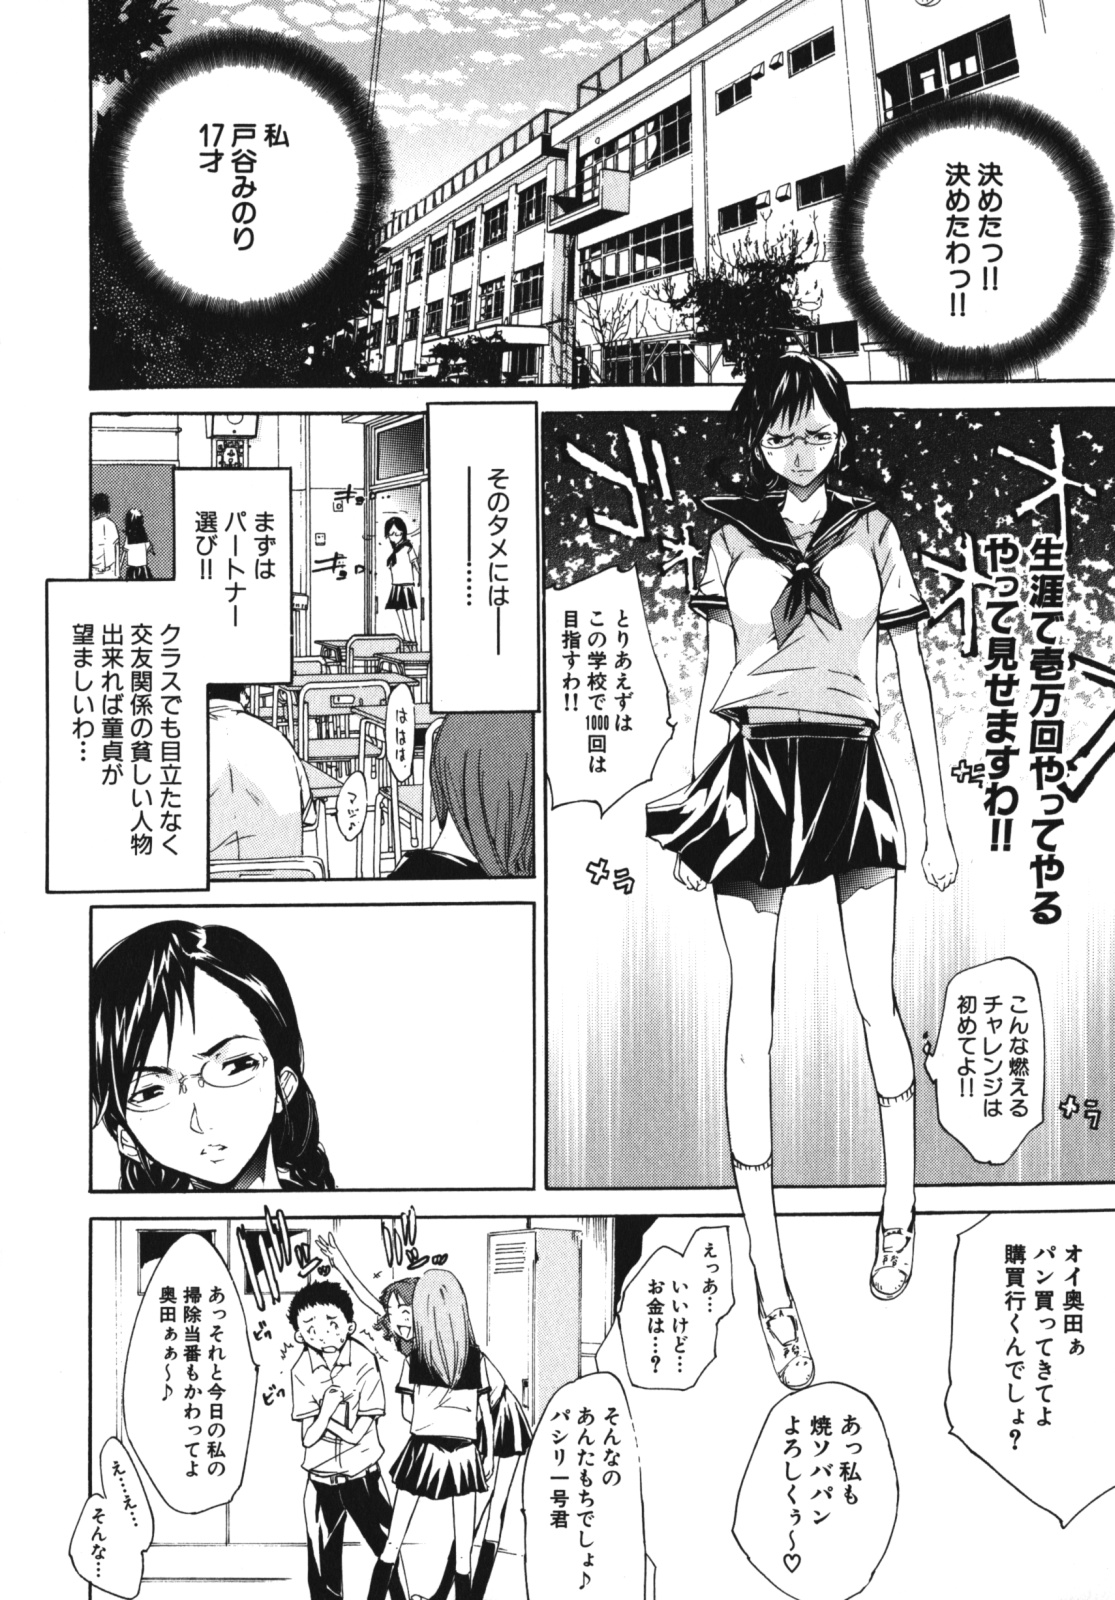 [Anthology] Geki Yaba Vol.4 - Namade Shitene page 33 full